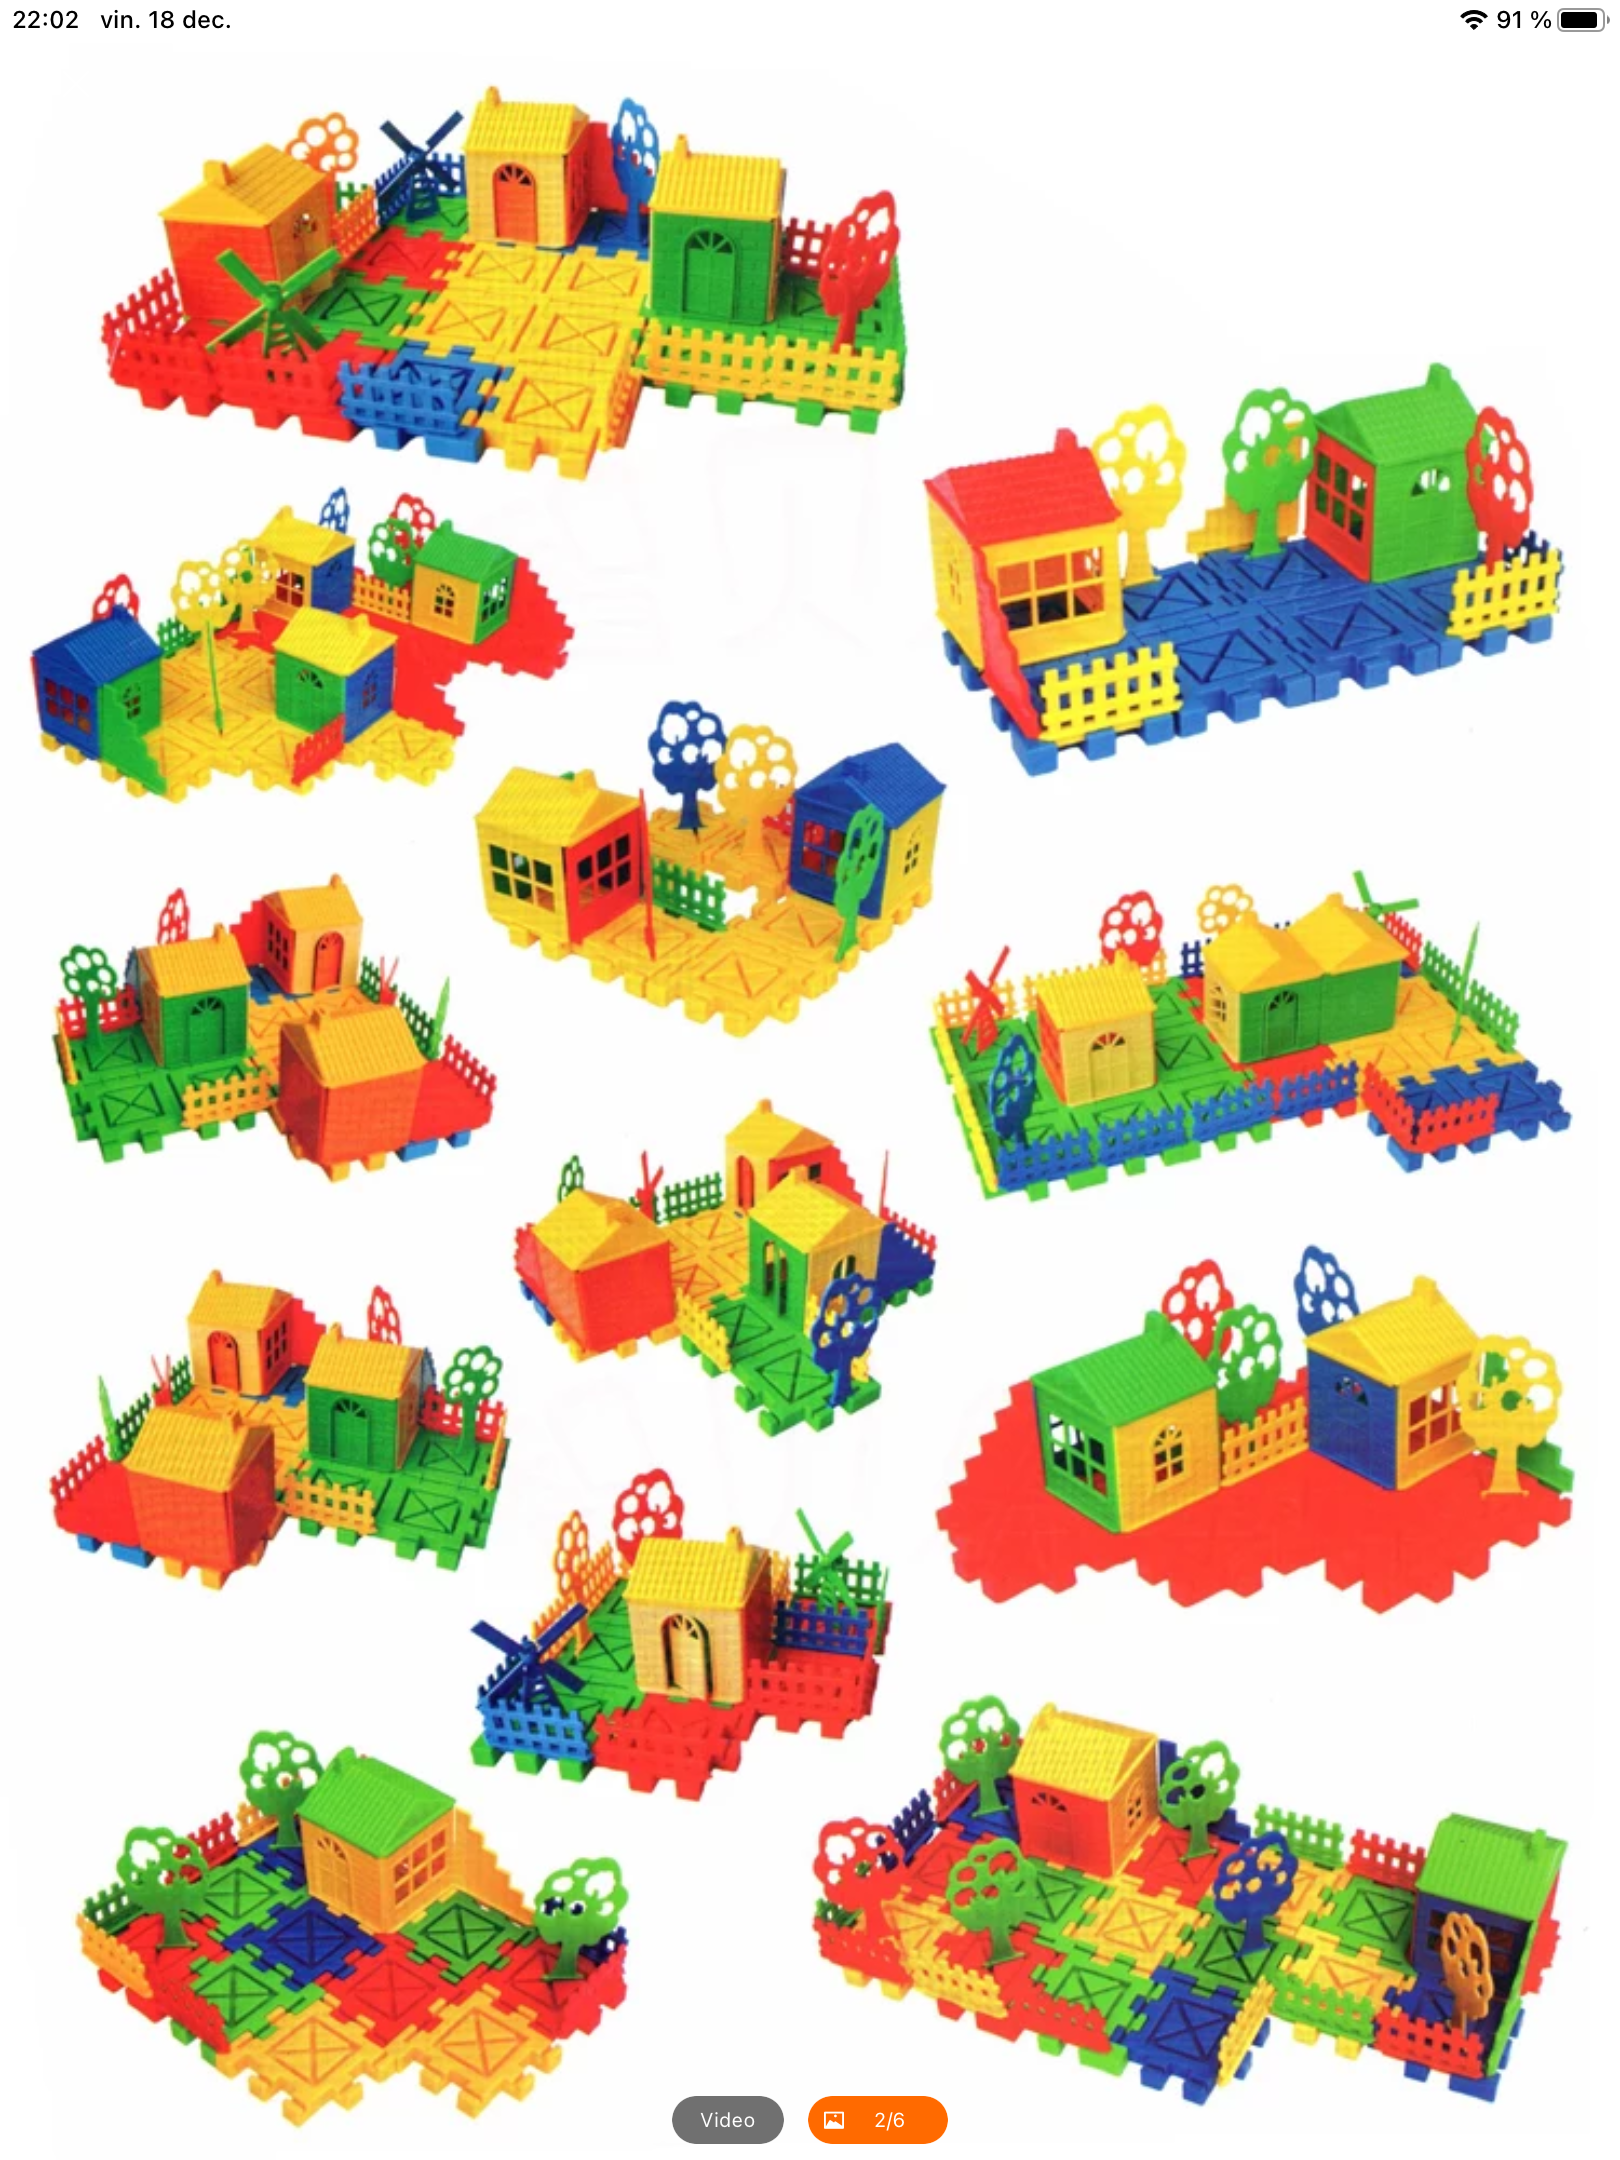 Set de construcții din plastic pentru copii de vârstă trei ani care pot crea o multitudine de proiecte case